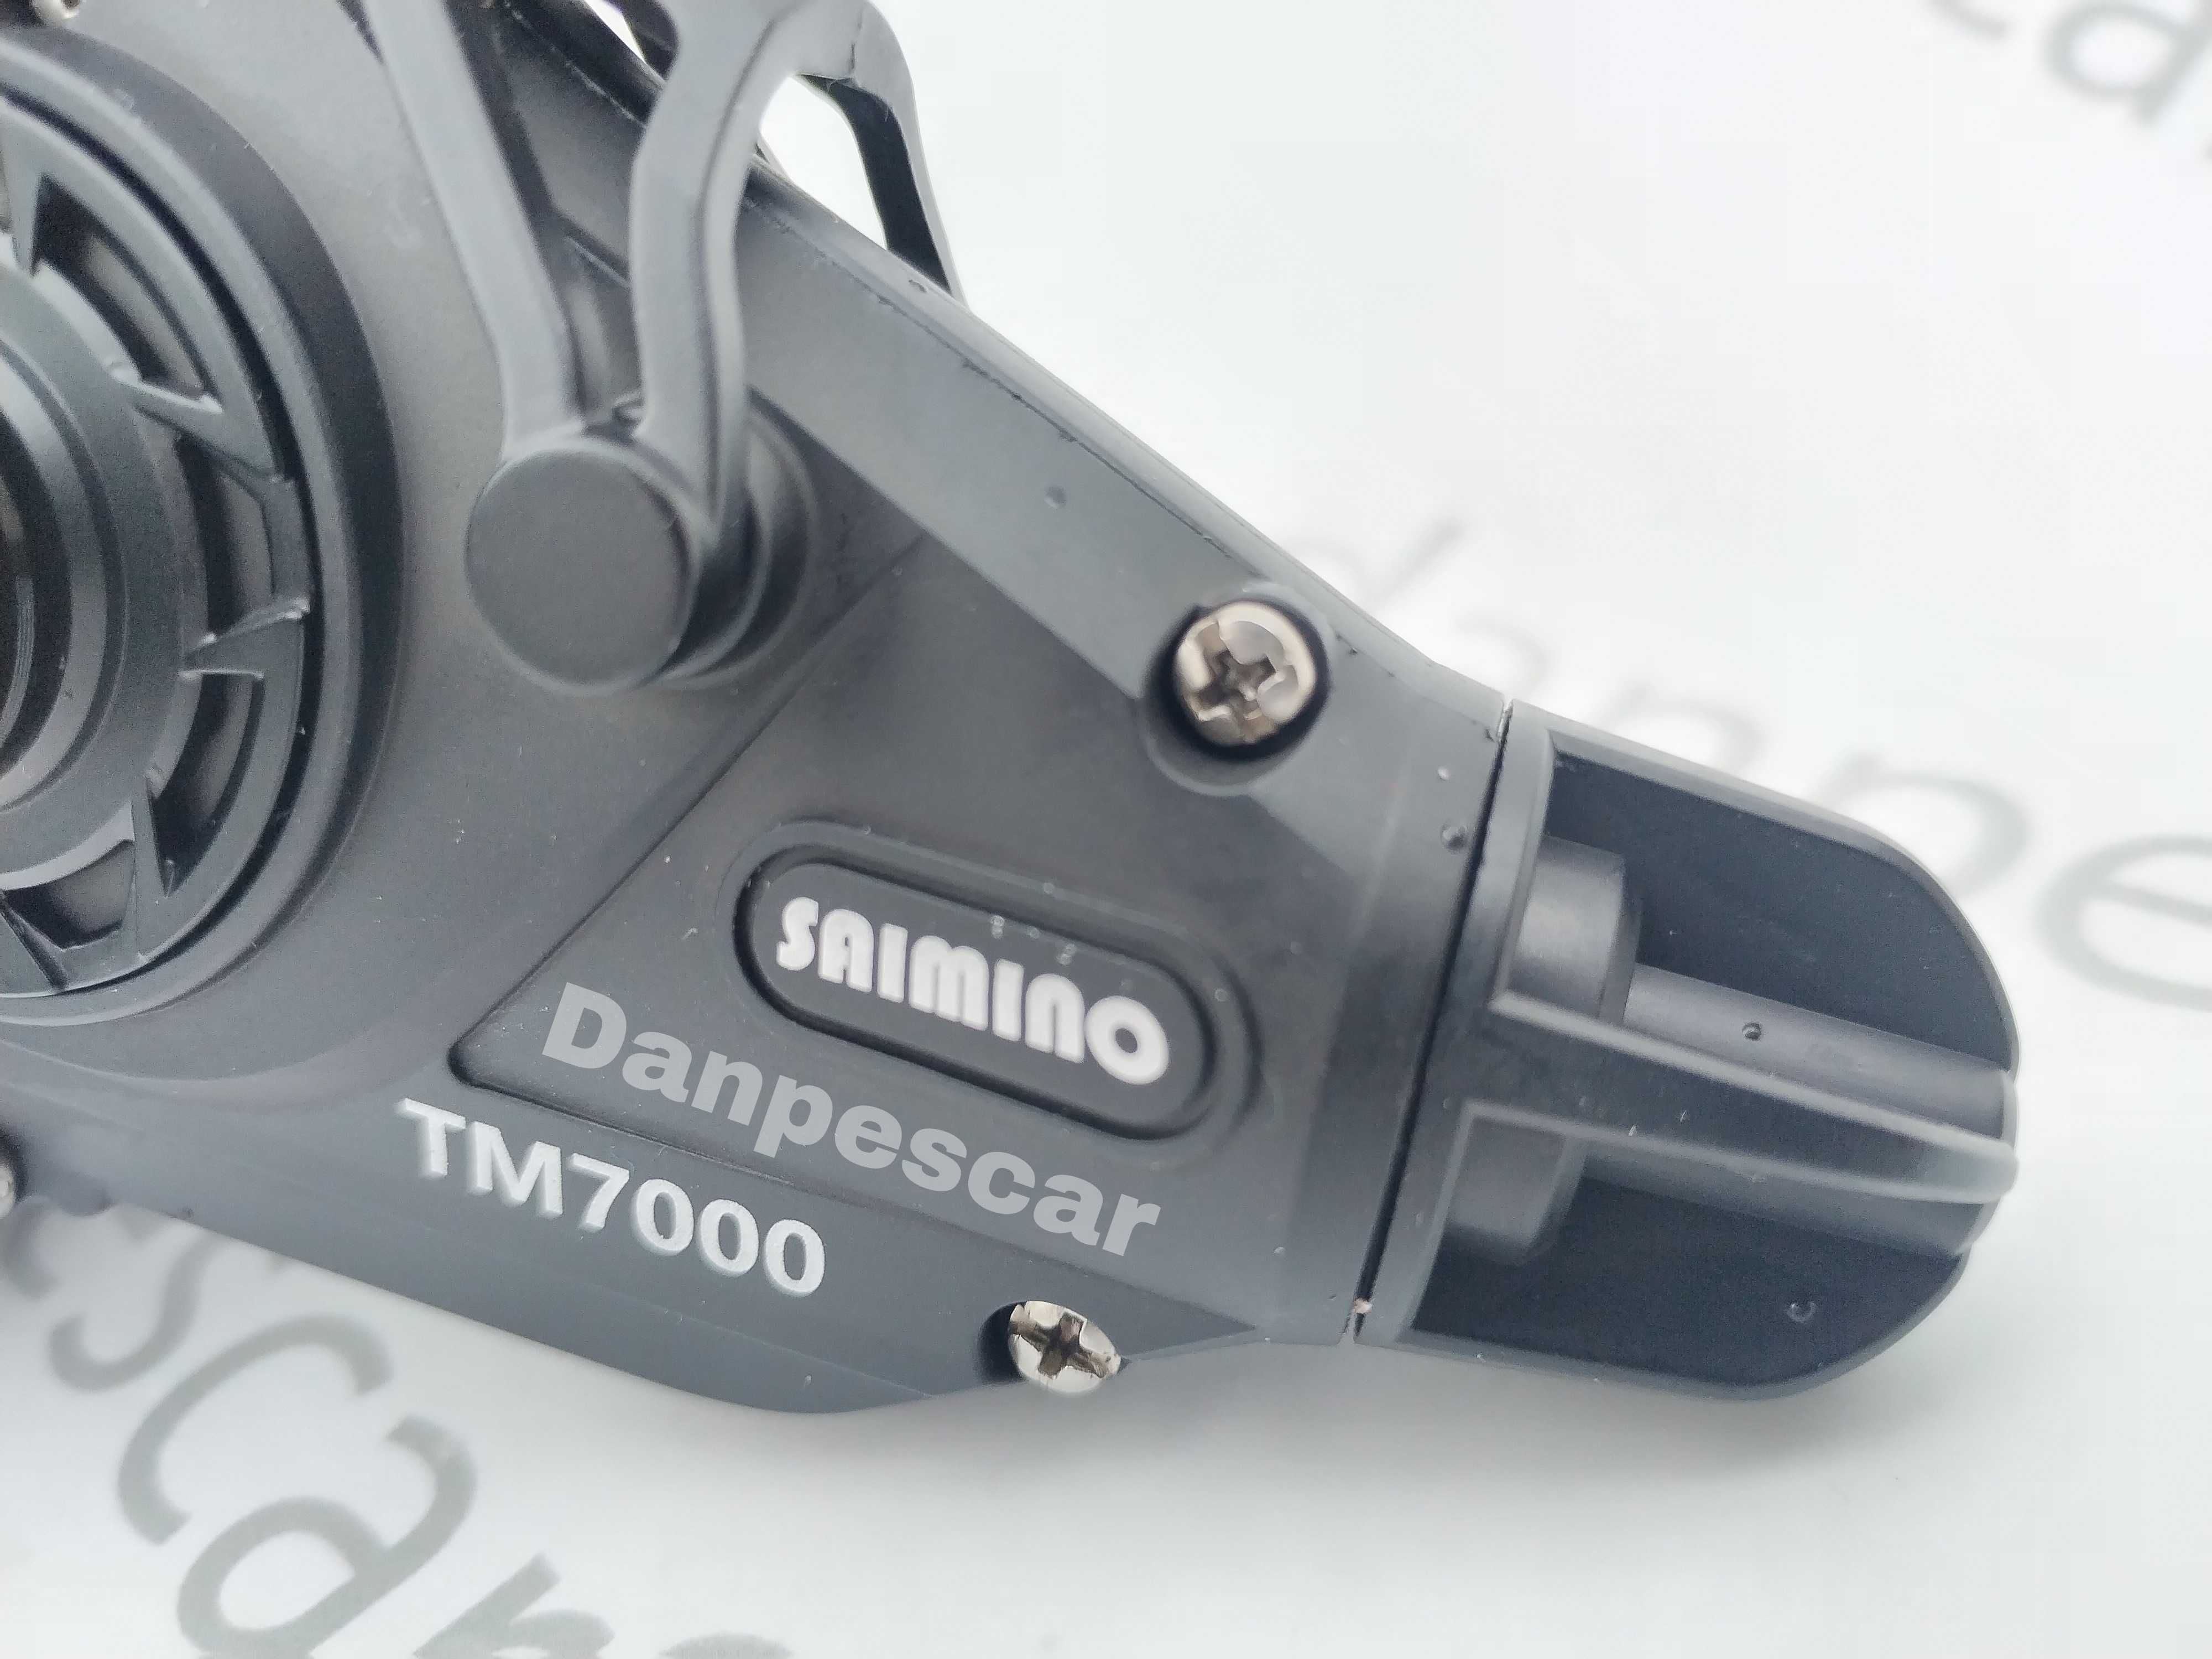 Mulineta SAIMINO TM7000 Long Cast pentru crap Capacitate: 0,32mm/490m